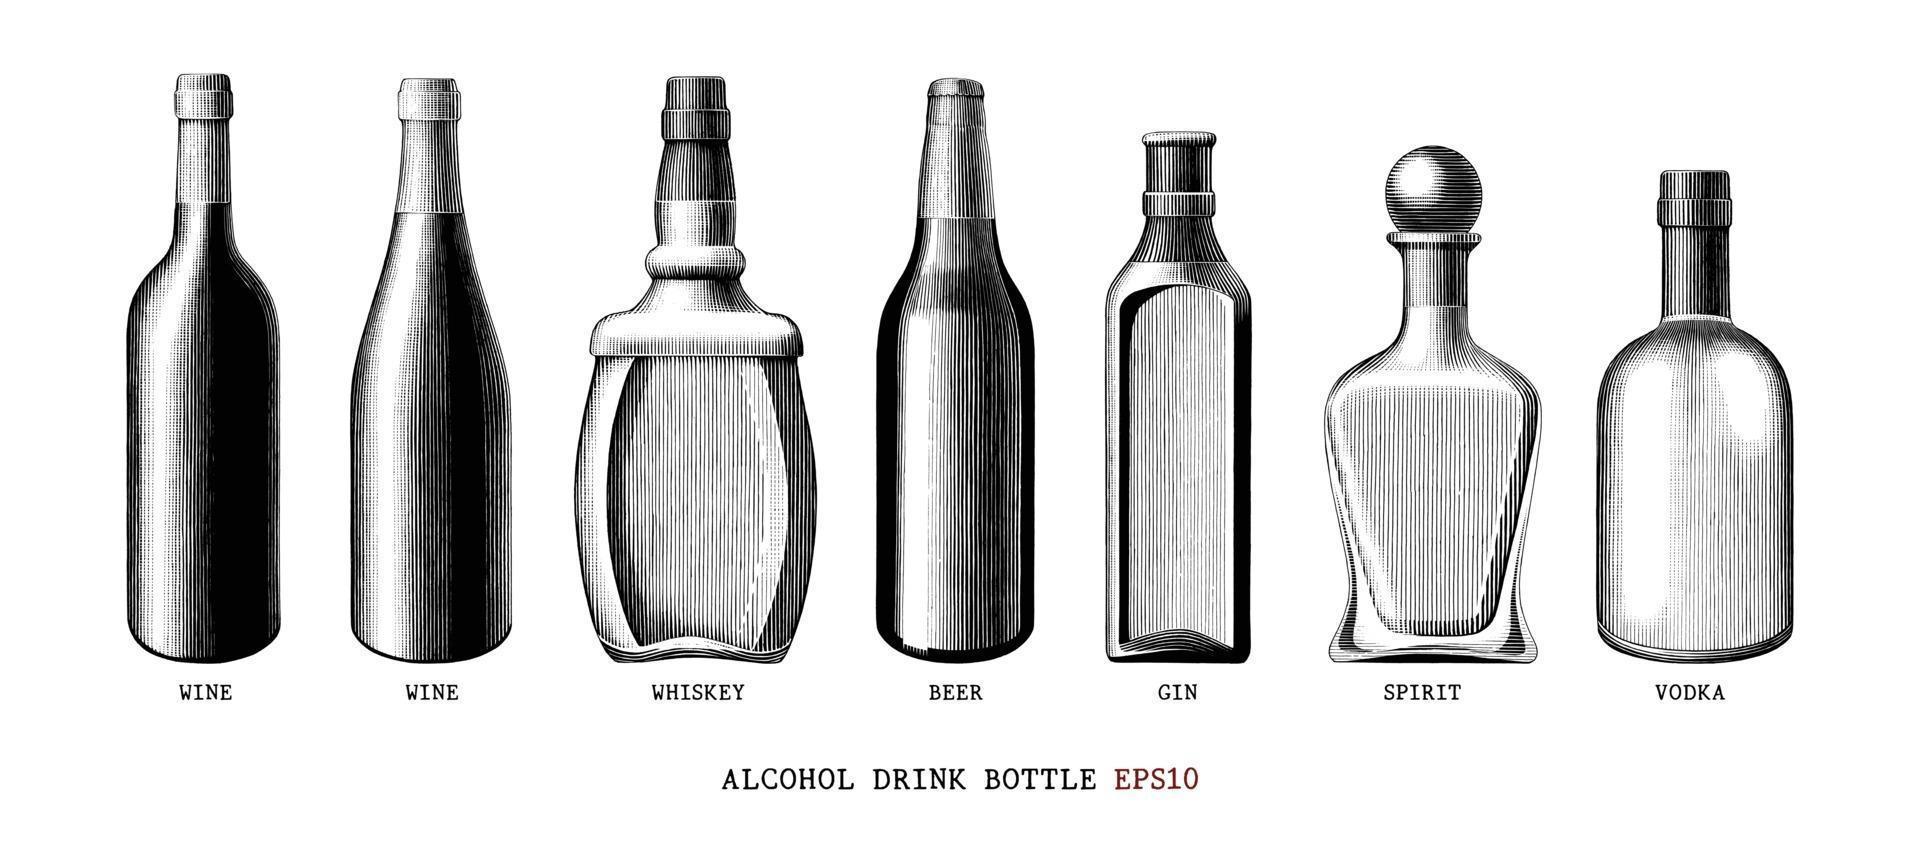 collection de bouteilles de boisson alcoolisée art noir et blanc de style vintage dessiné à la main isolé sur fond blanc vecteur